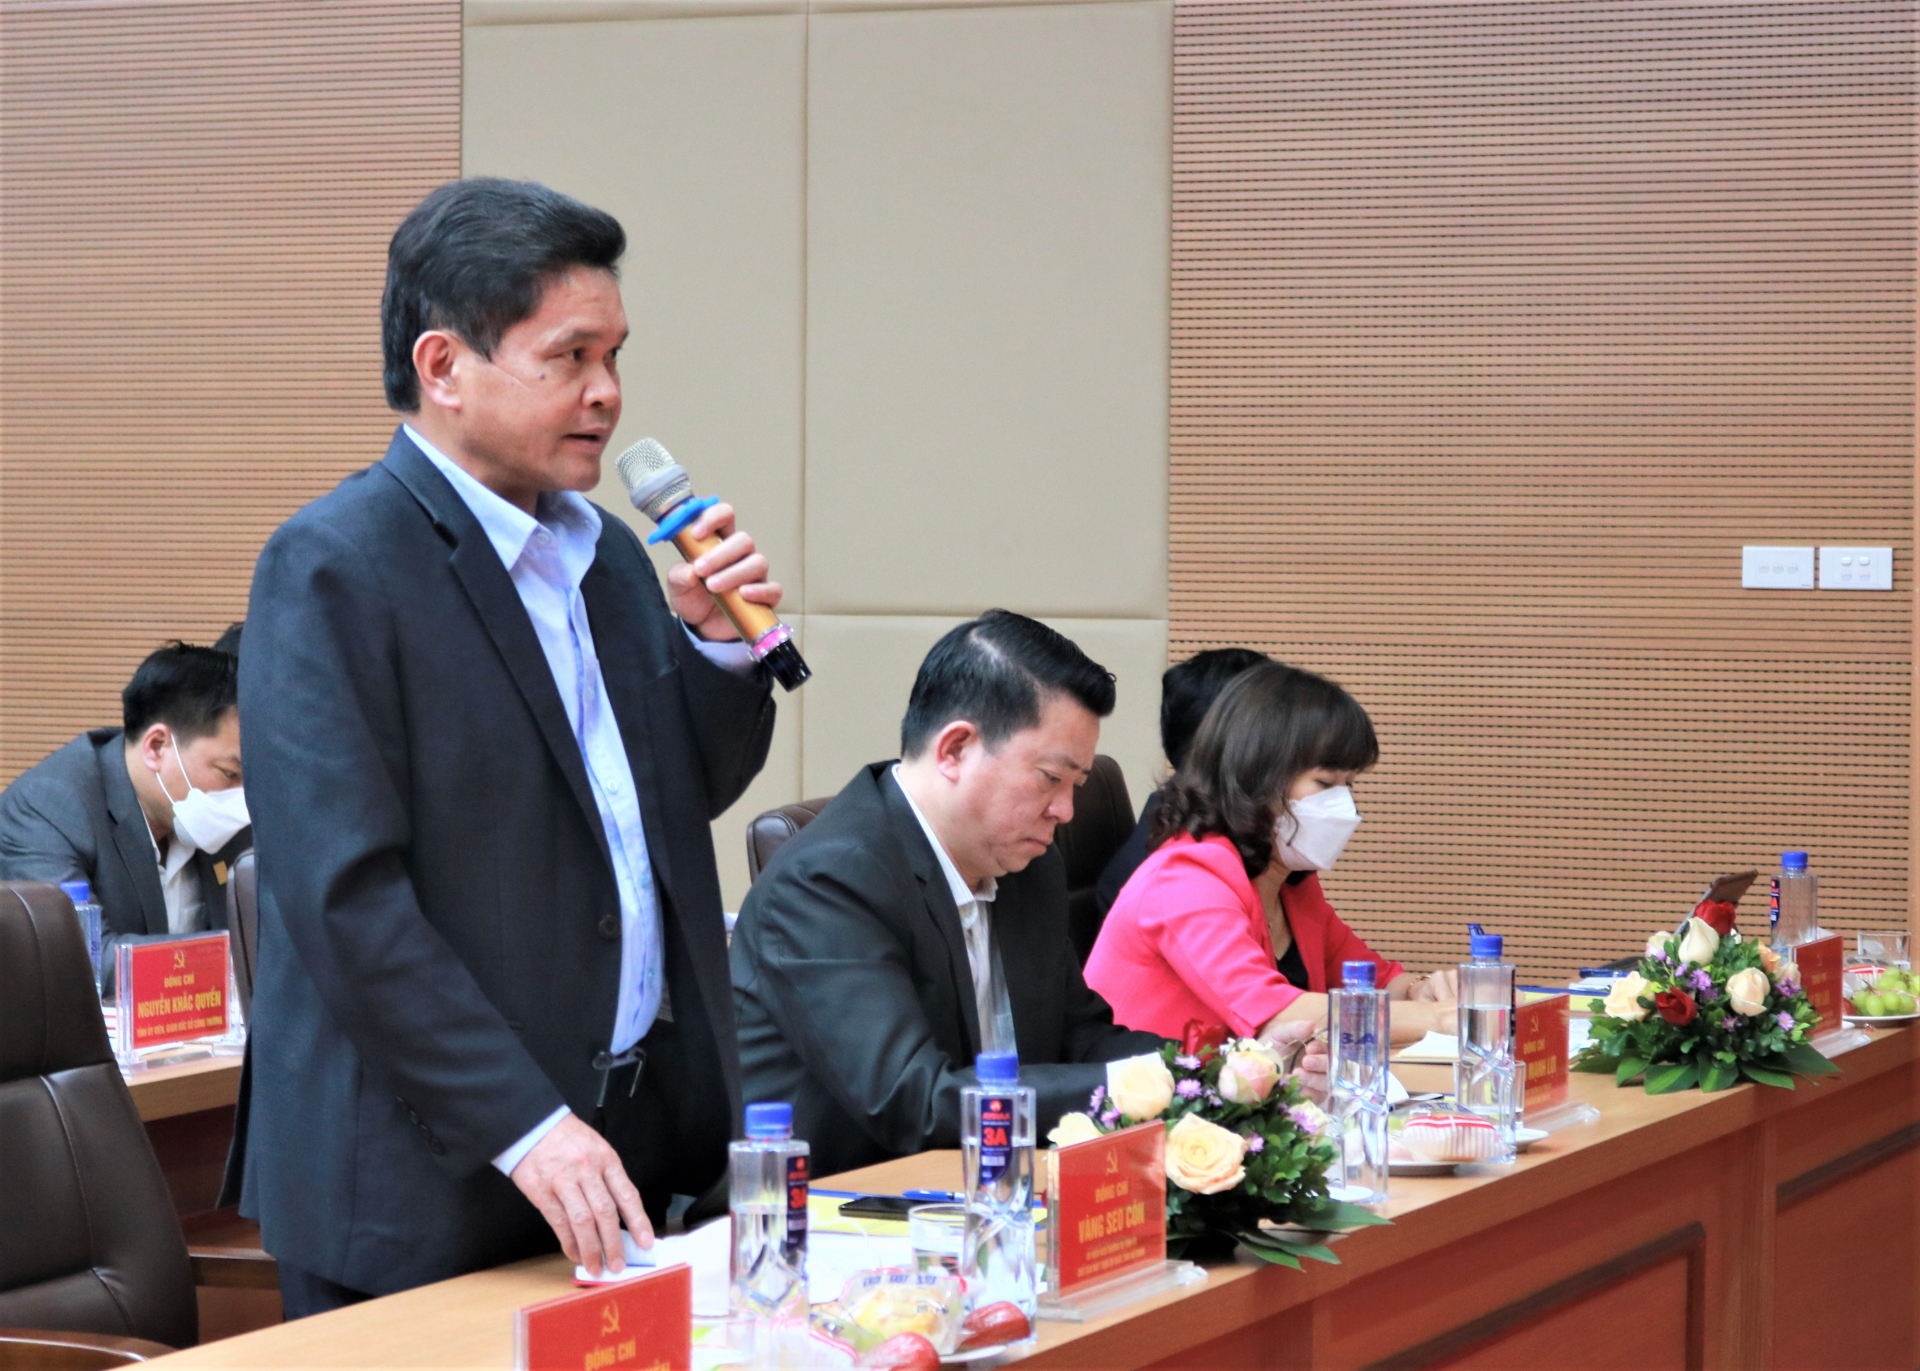 Chủ tịch Ủy ban MTTQ tỉnh Vàng Seo Cón đề nghị Đảng ủy Công ty Điện lực Hà Giang chú trọng thực hiện quy chế dân chủ trong doanh nghiệp, chăm lo đời sống người lao động; phối hợp với các địa phương làm tốt công tác an sinh xã hội trên địa bàn.